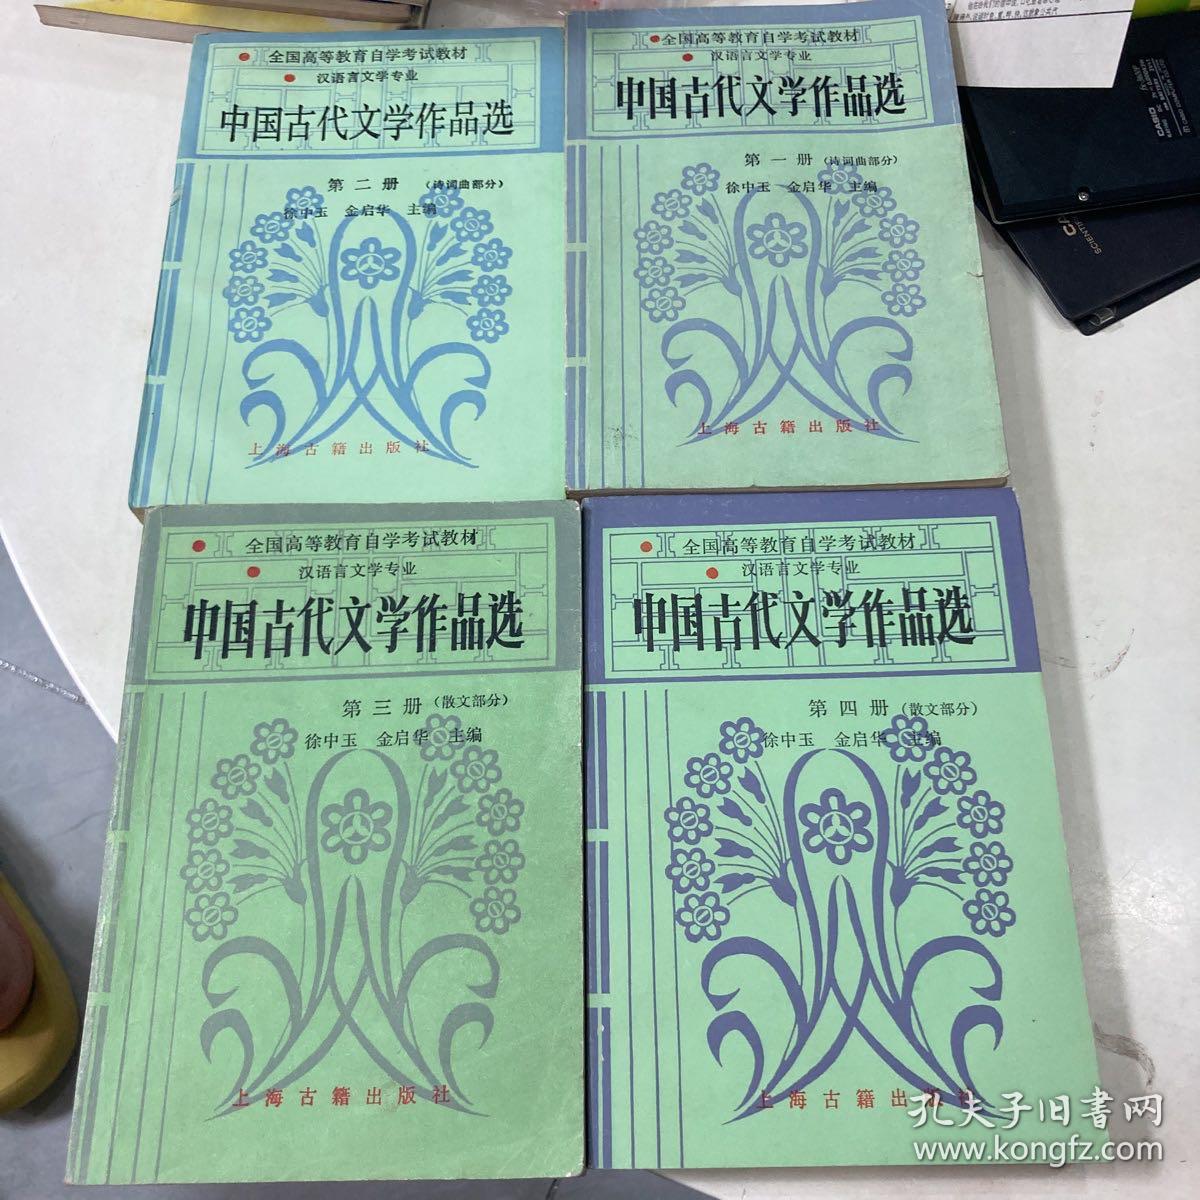 中国古代文学作品选 1-4 有笔记